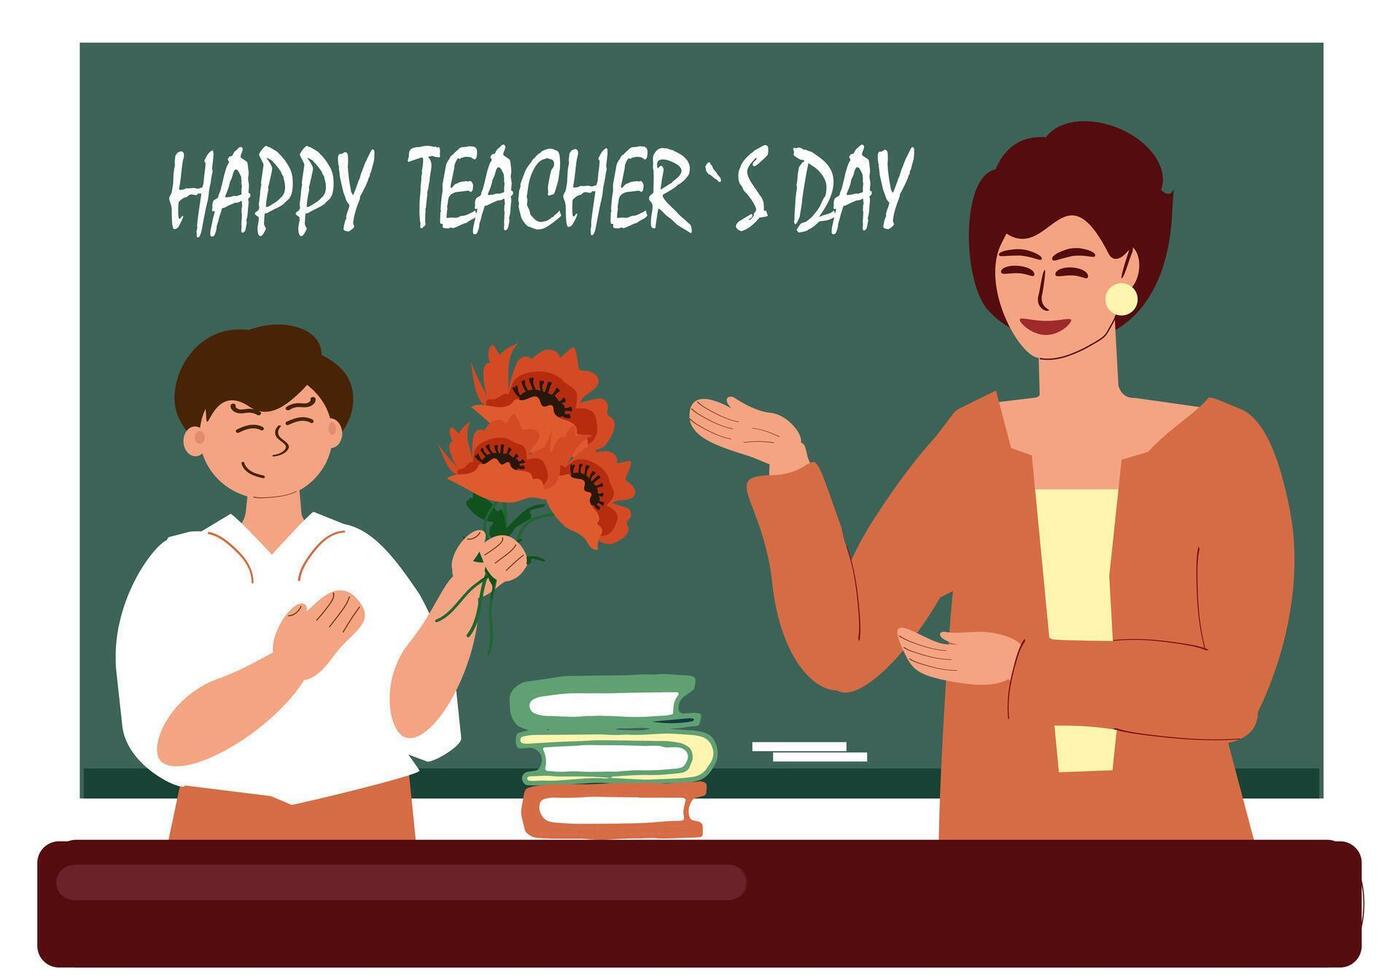 lärarens dag. en skol gratulerar och ger en bukett av blommor till de lärare på de svarta tavlan och tabell med böcker. Lycklig lärarens dag är skriven i krita på de svarta tavlan. vektor